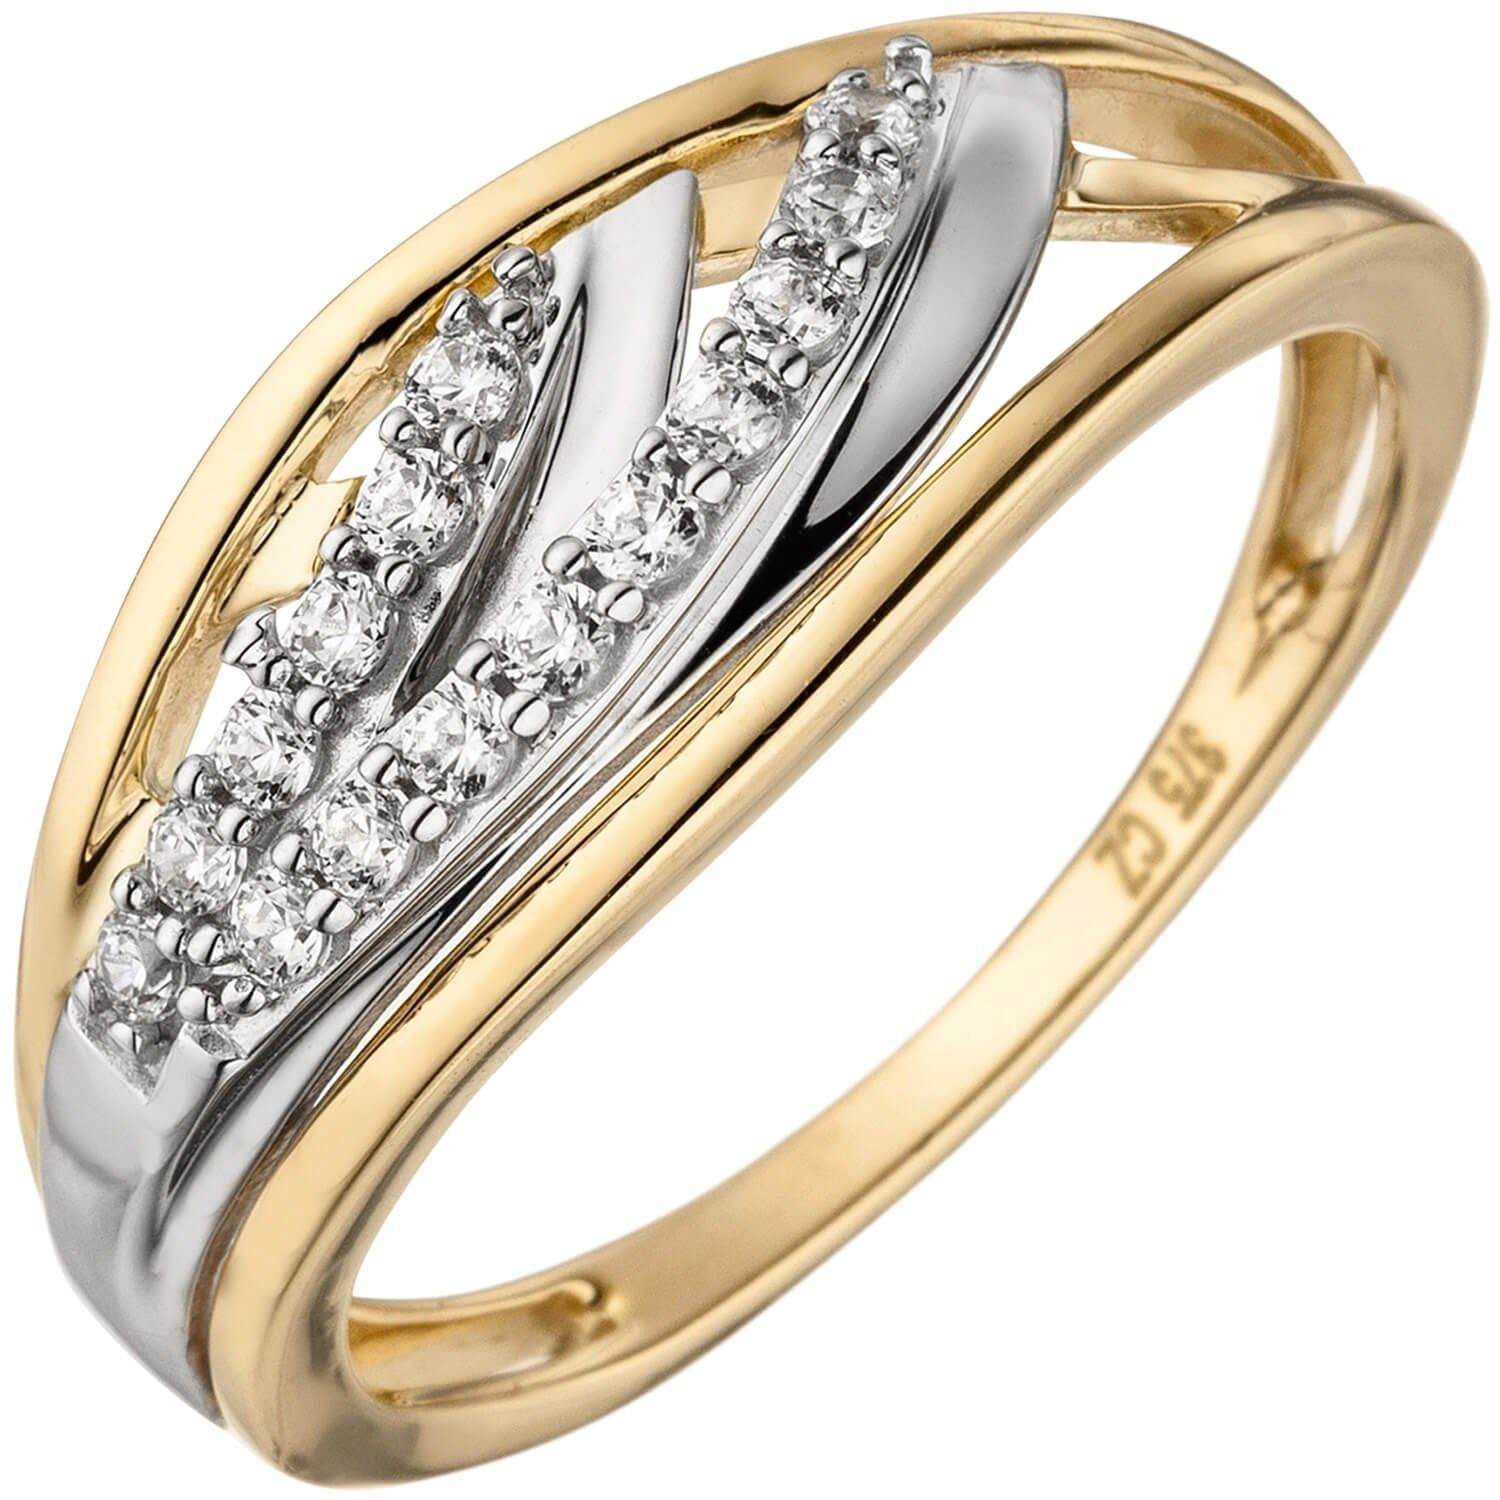 Schmuck Krone Goldring Eleganter Ring mit Zirkonia 375 Gold Gelbgold, Gold 375